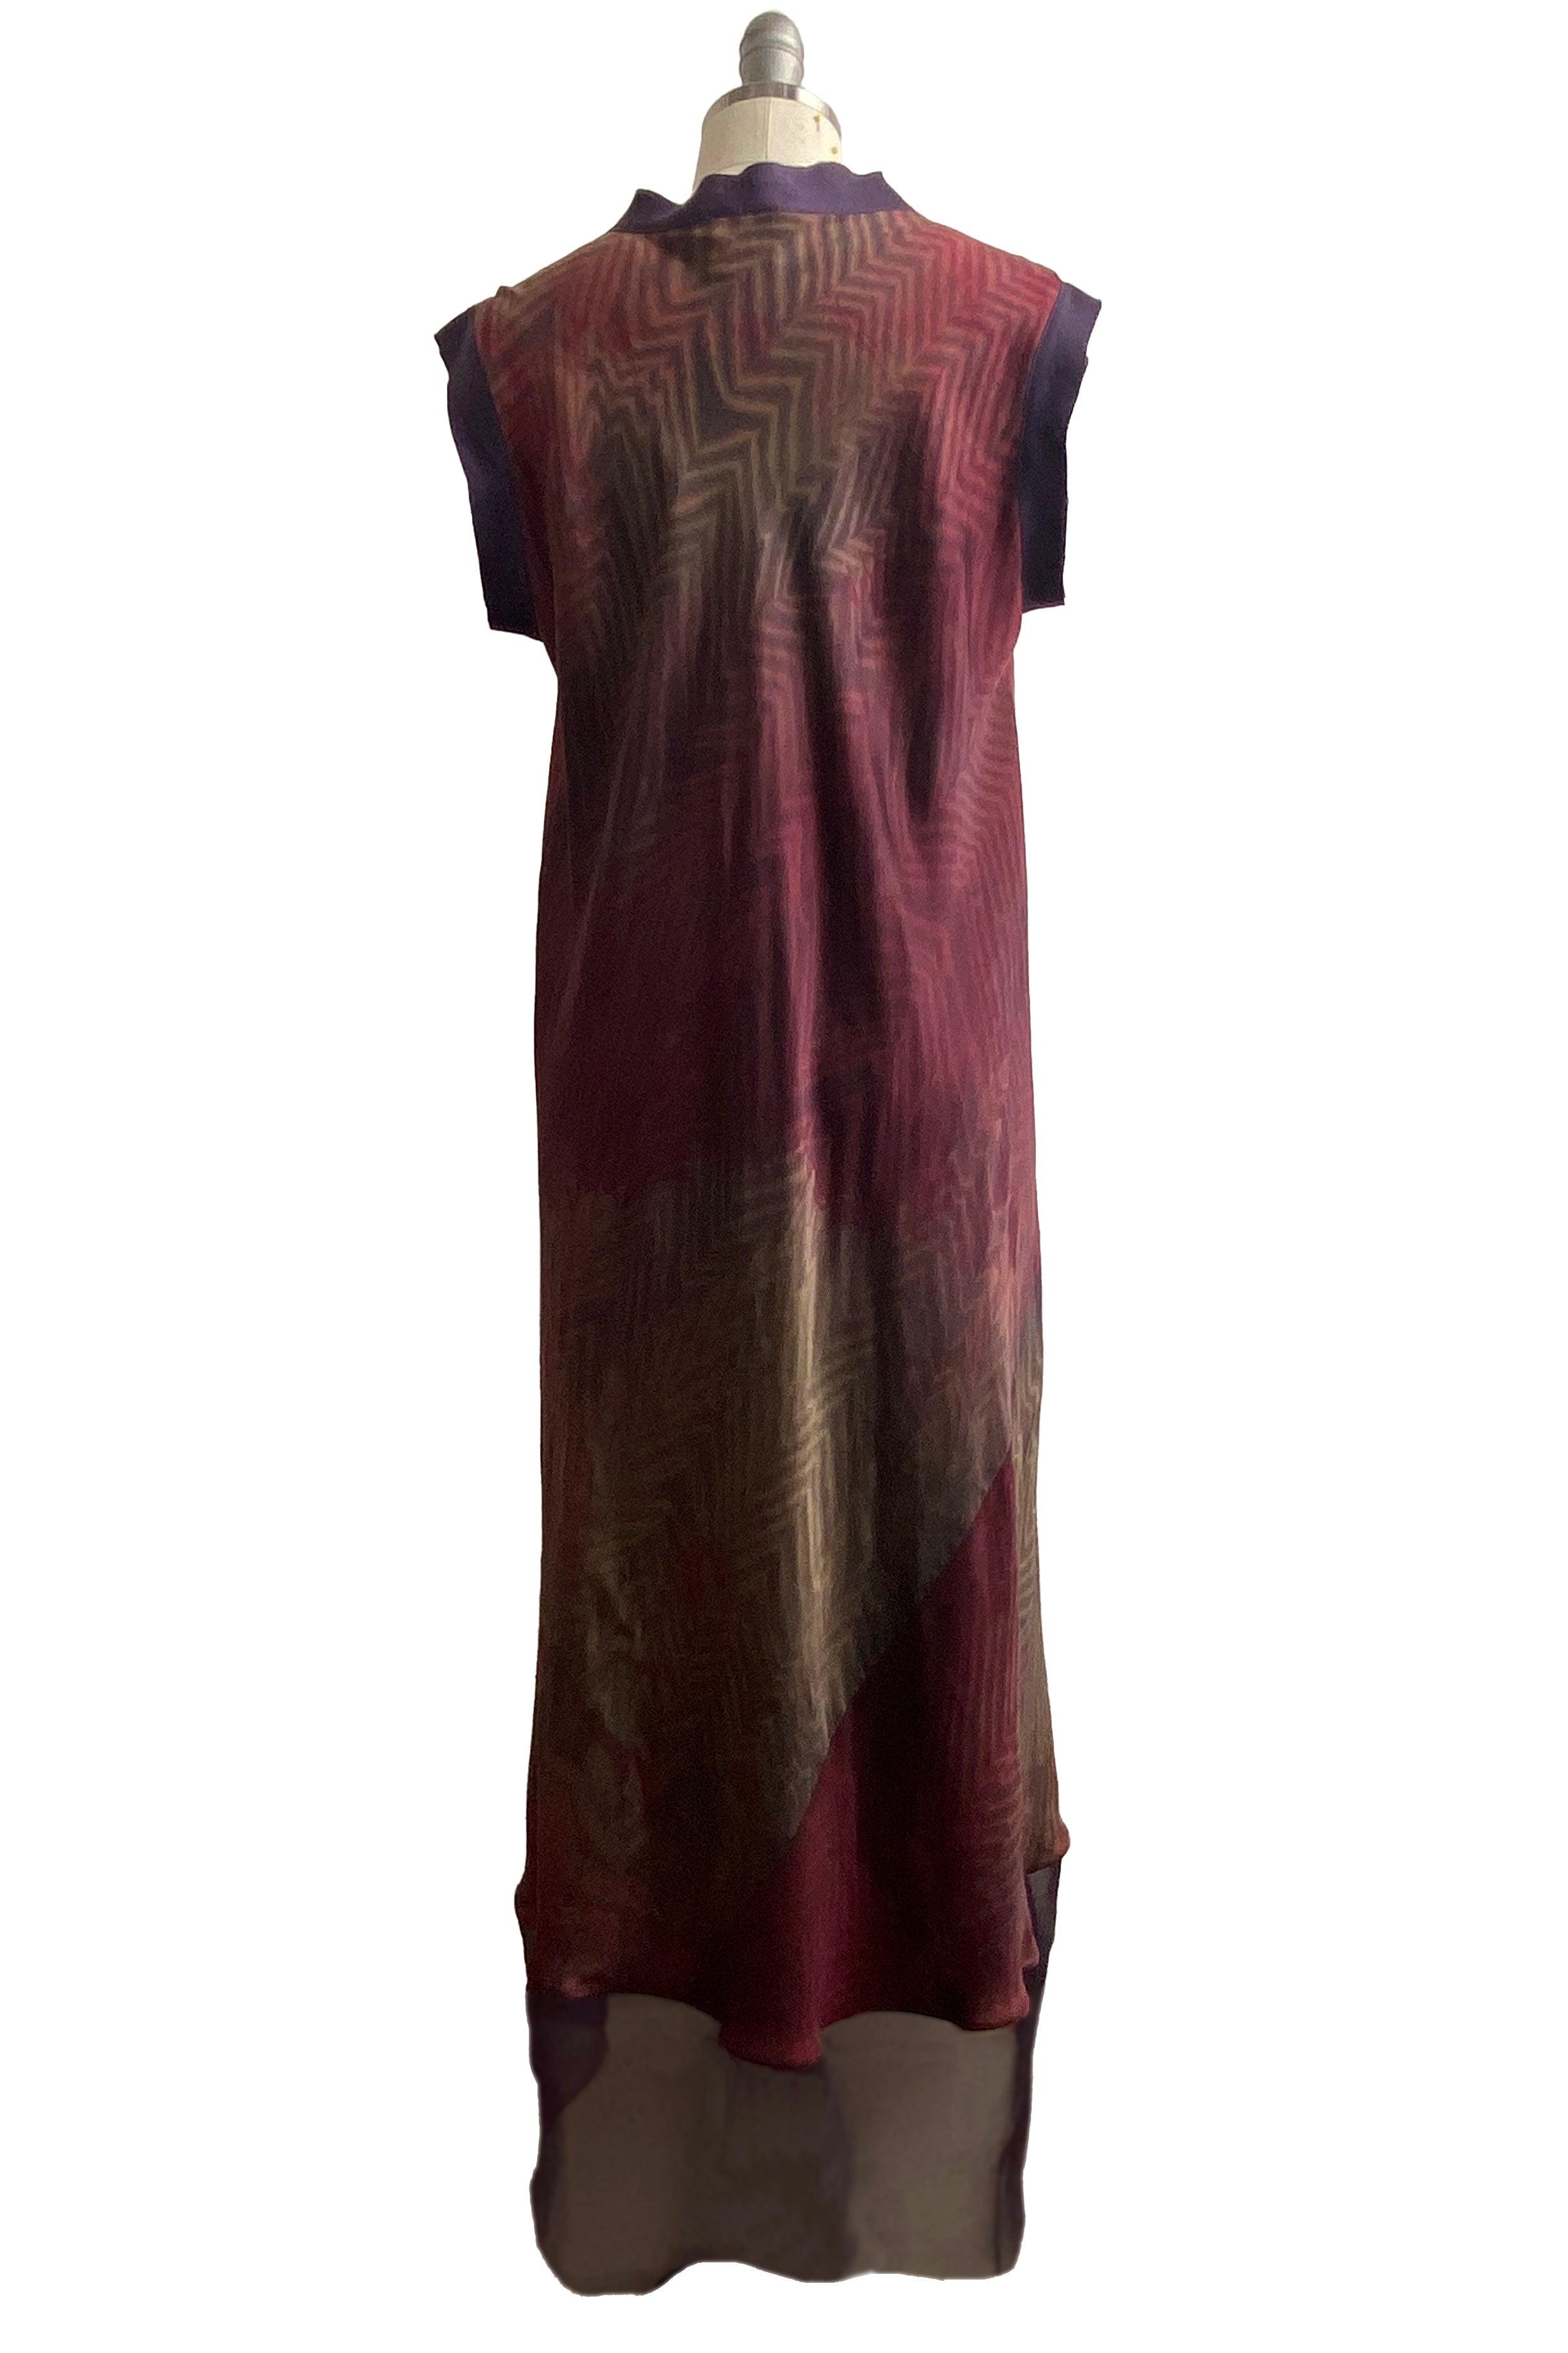 Titania Dress - Charmeuse w/ Organza Trim - Shibori Arashi Dye Red, Brown & Natural